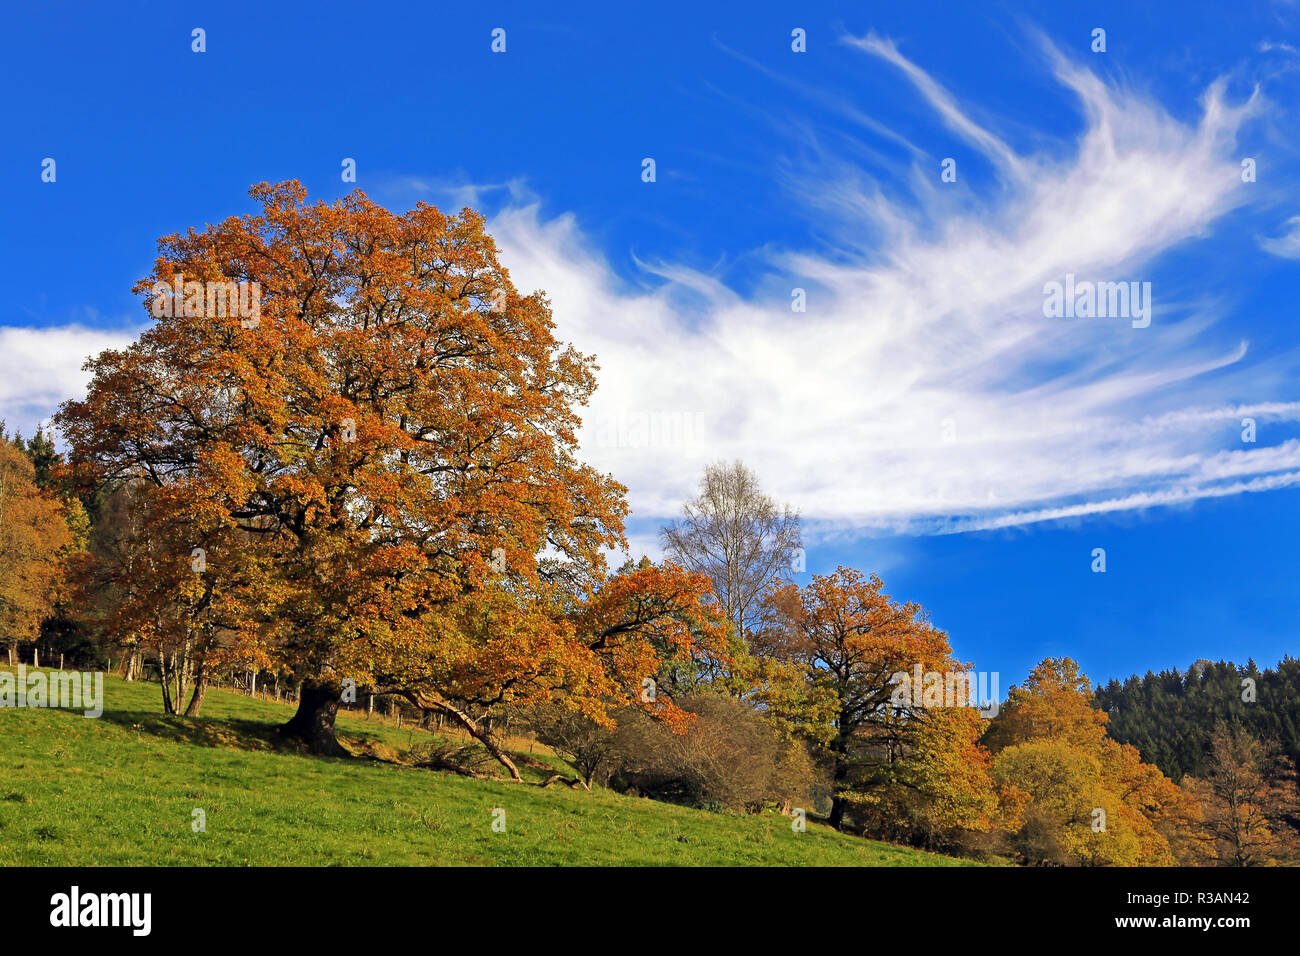 autumn in hochsauerland Stock Photo